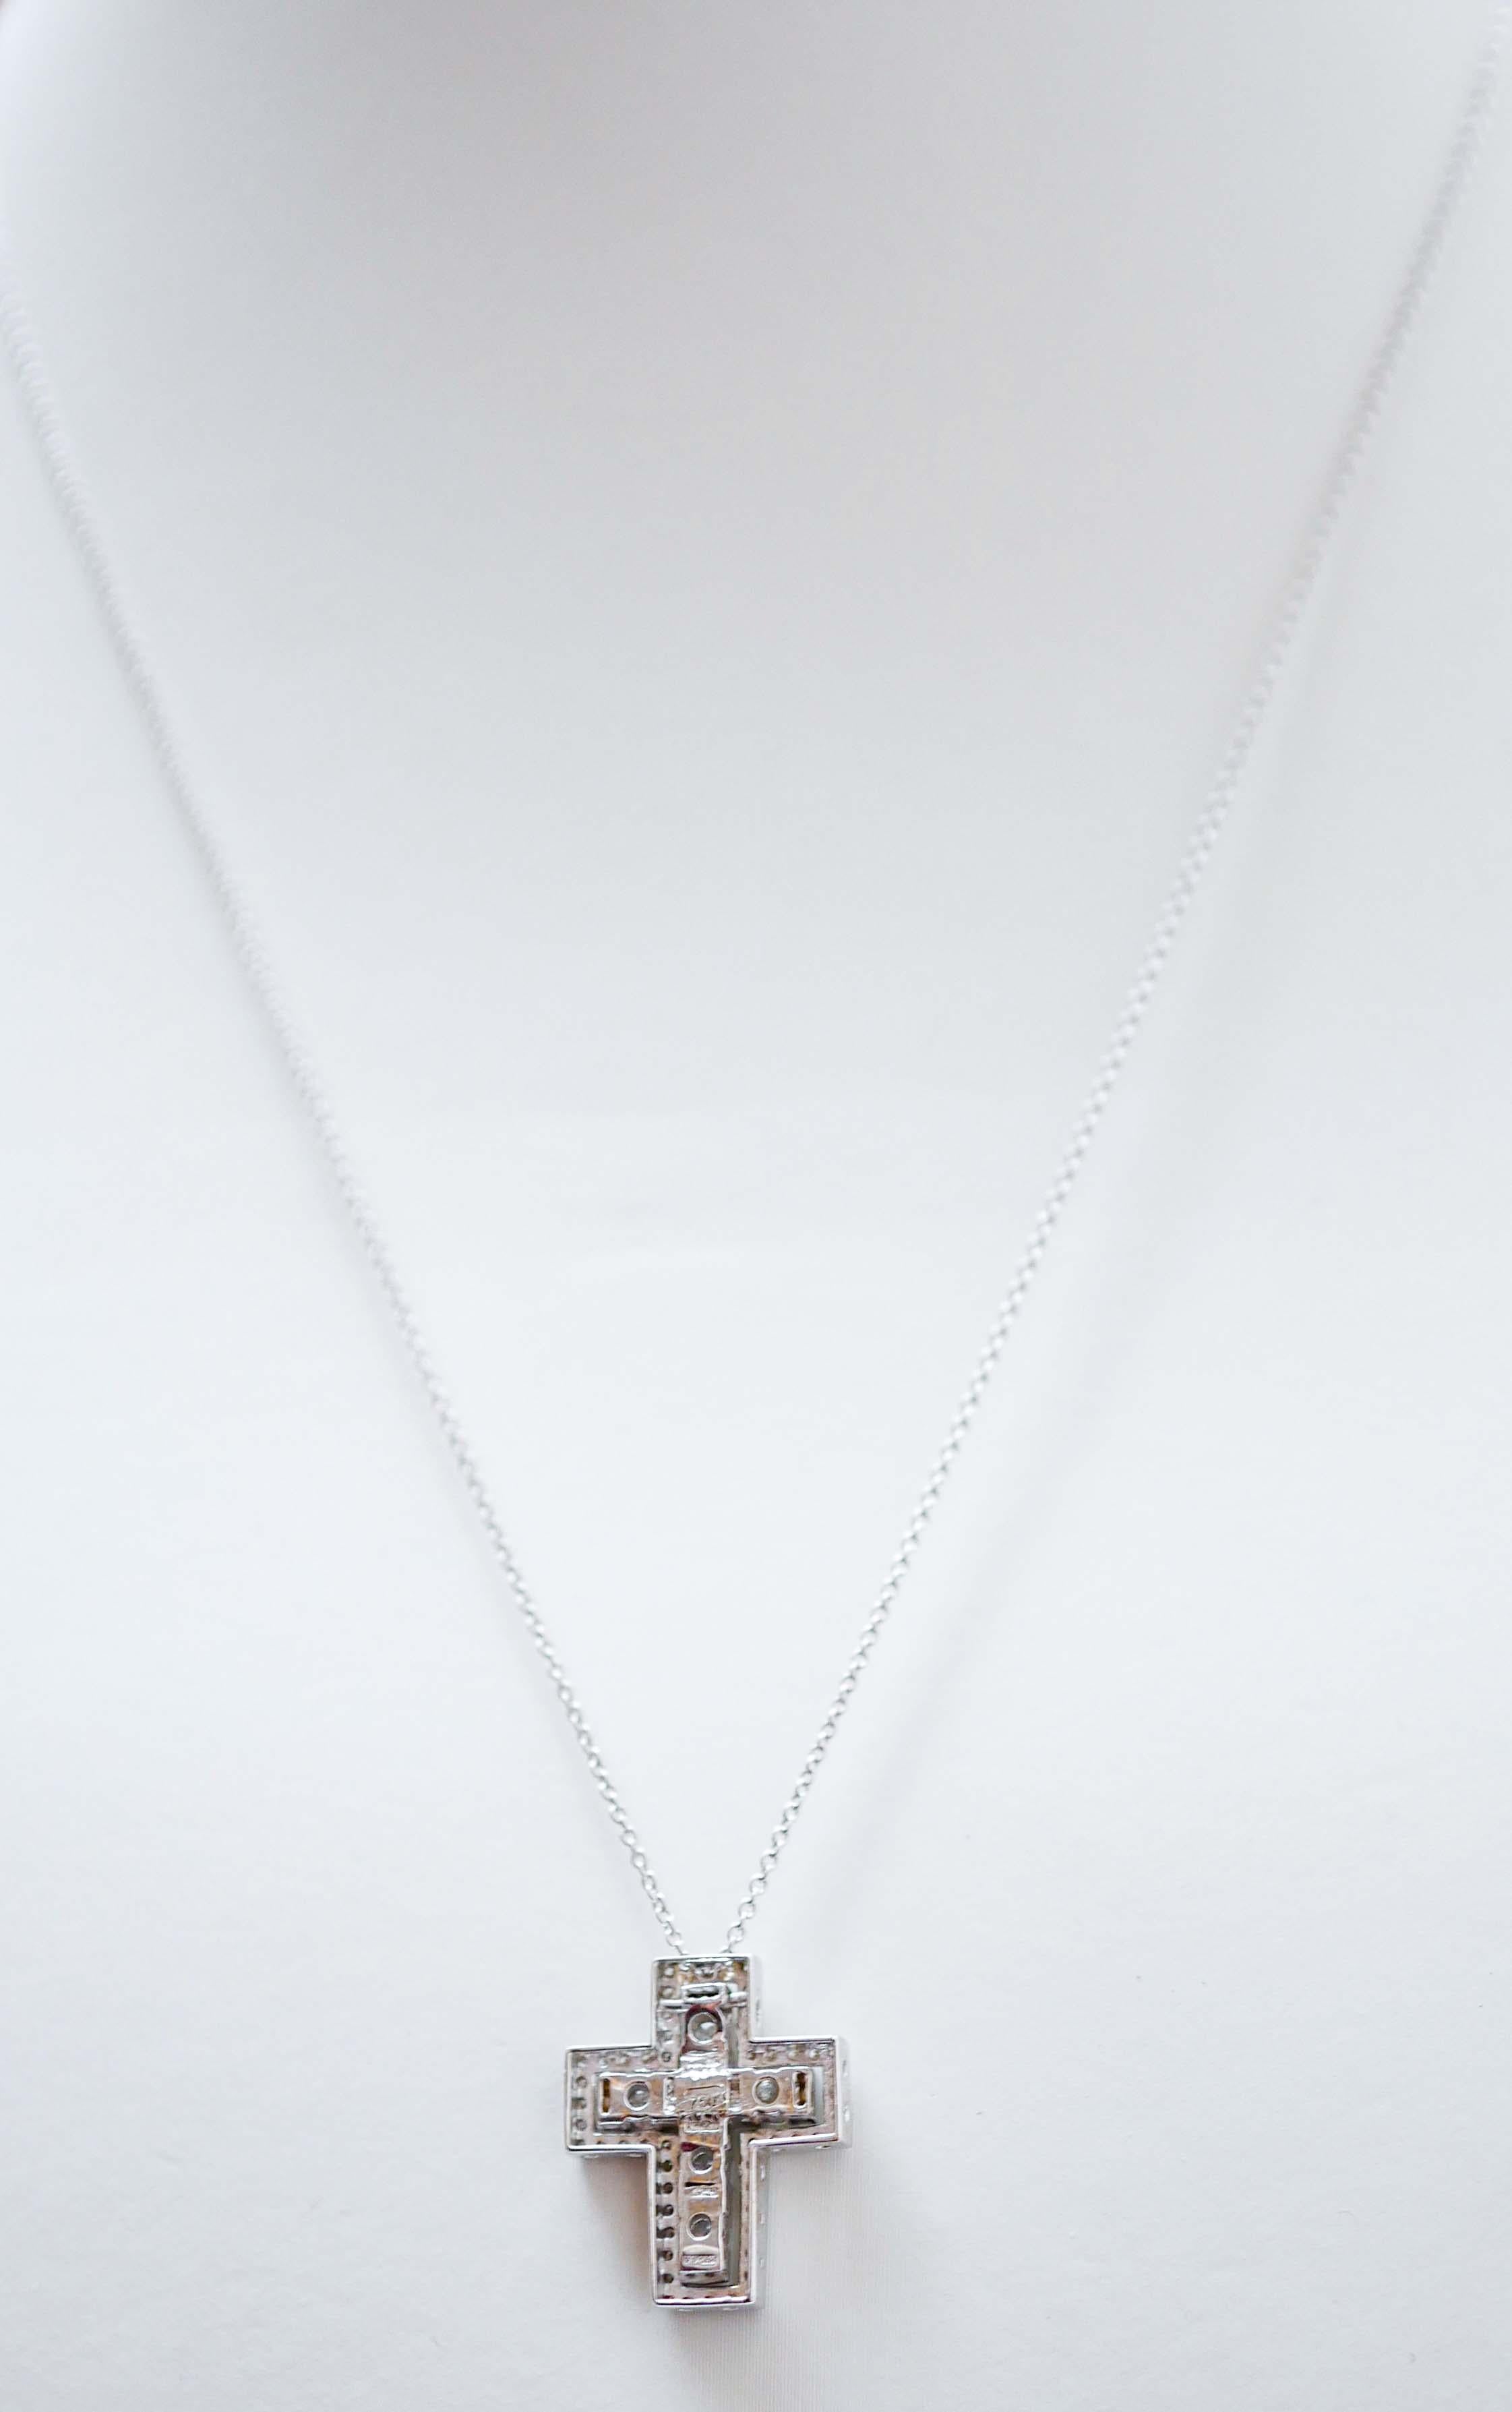 Brilliant Cut Diamonds, 18 Karat White Gold Cross Pendant Necklace. For Sale